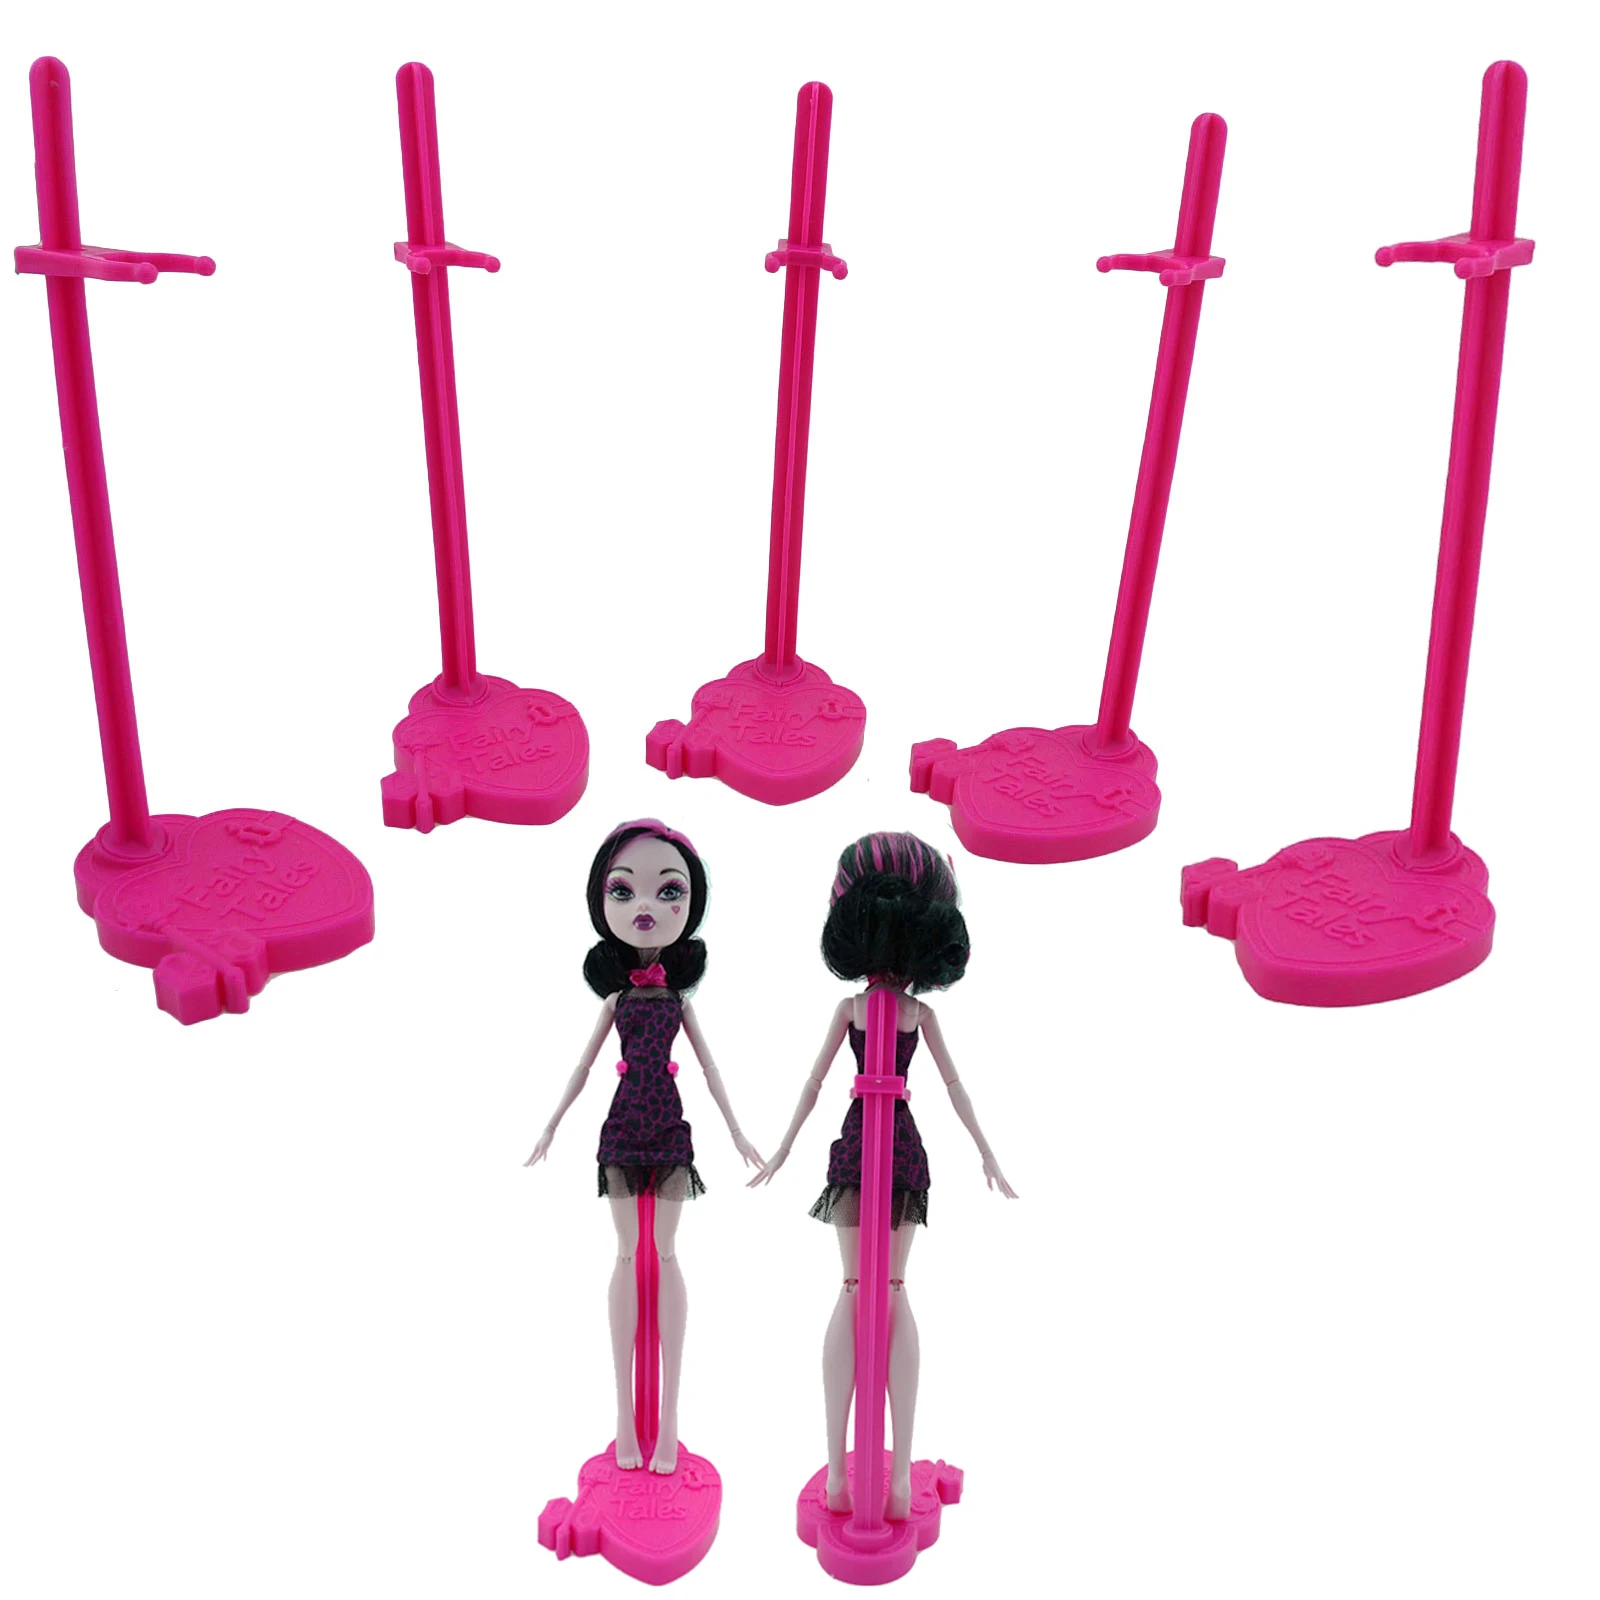 5 шт. подставка для кукол дисплей держатель розовая игрушка модель аксессуары для куклы Monster High для Ever After High кукольный домик для девочек детская игрушка